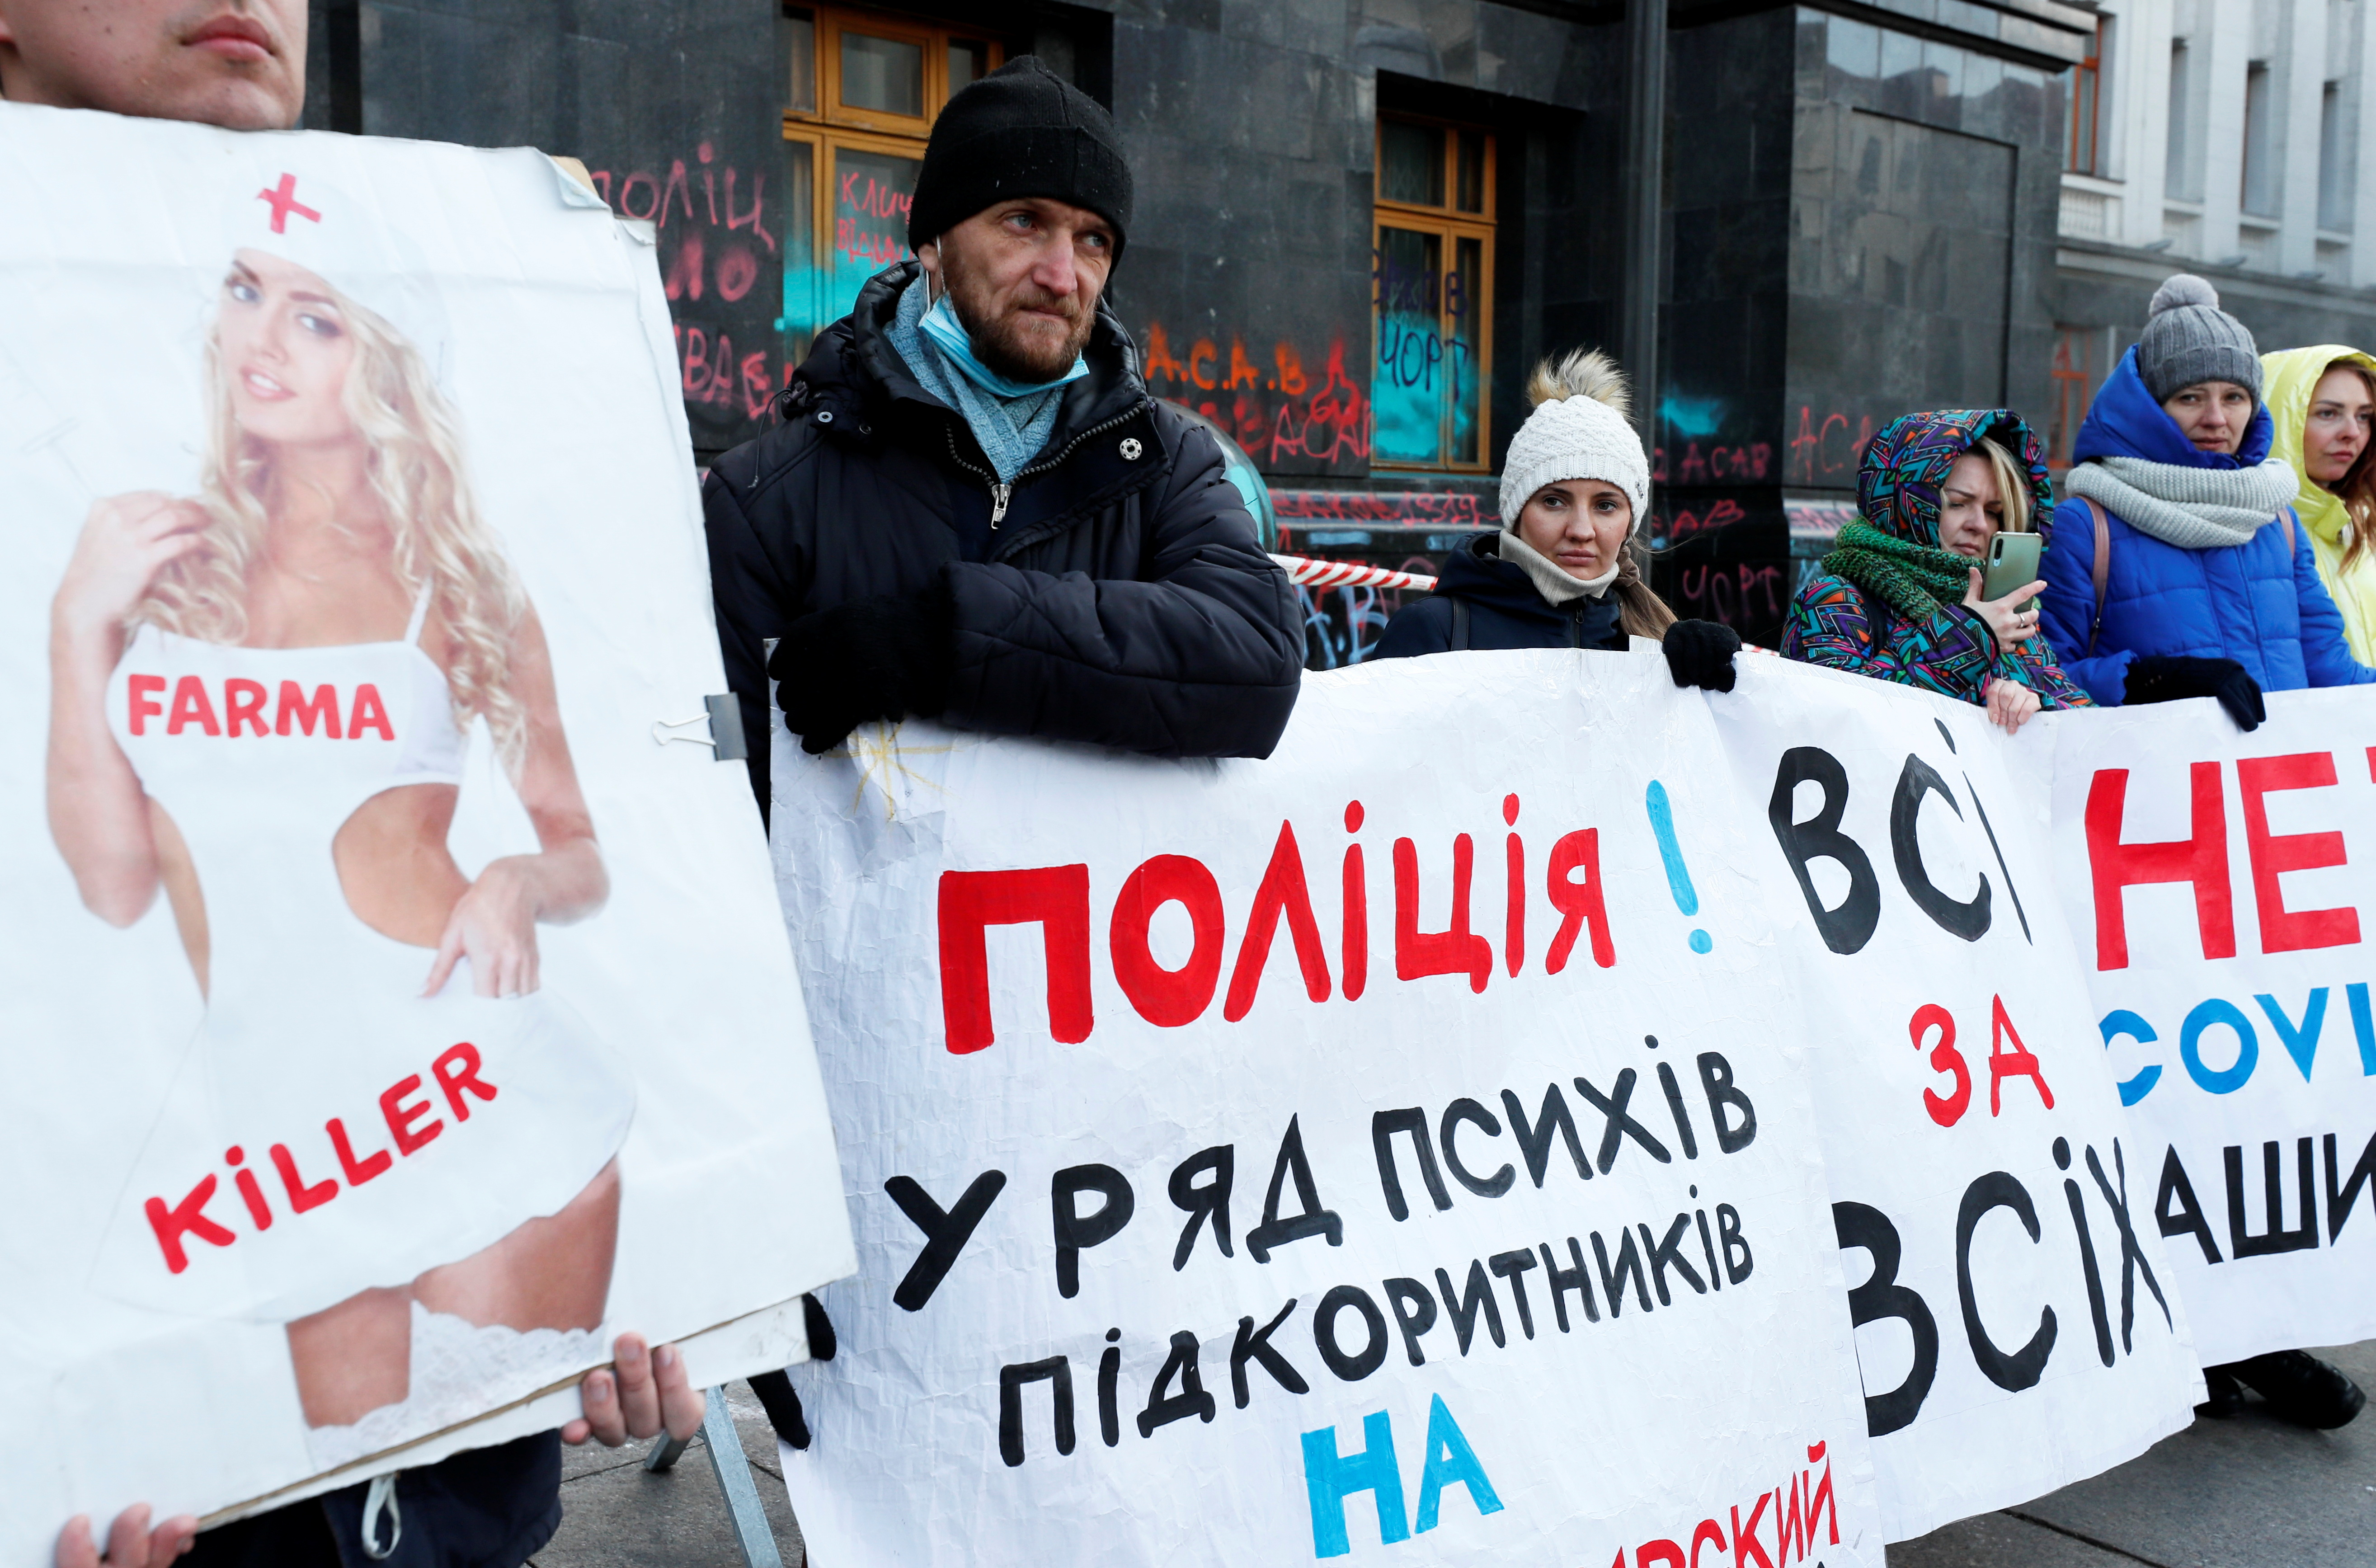 Activistas antivacunas protestan en Ucrania contra una ley que exime a los productores de los inmunizantes contra el coronavirus de la responsabilidad de cualquier consecuencia tras la inoculación (REUTERS/Gleb Garanich)